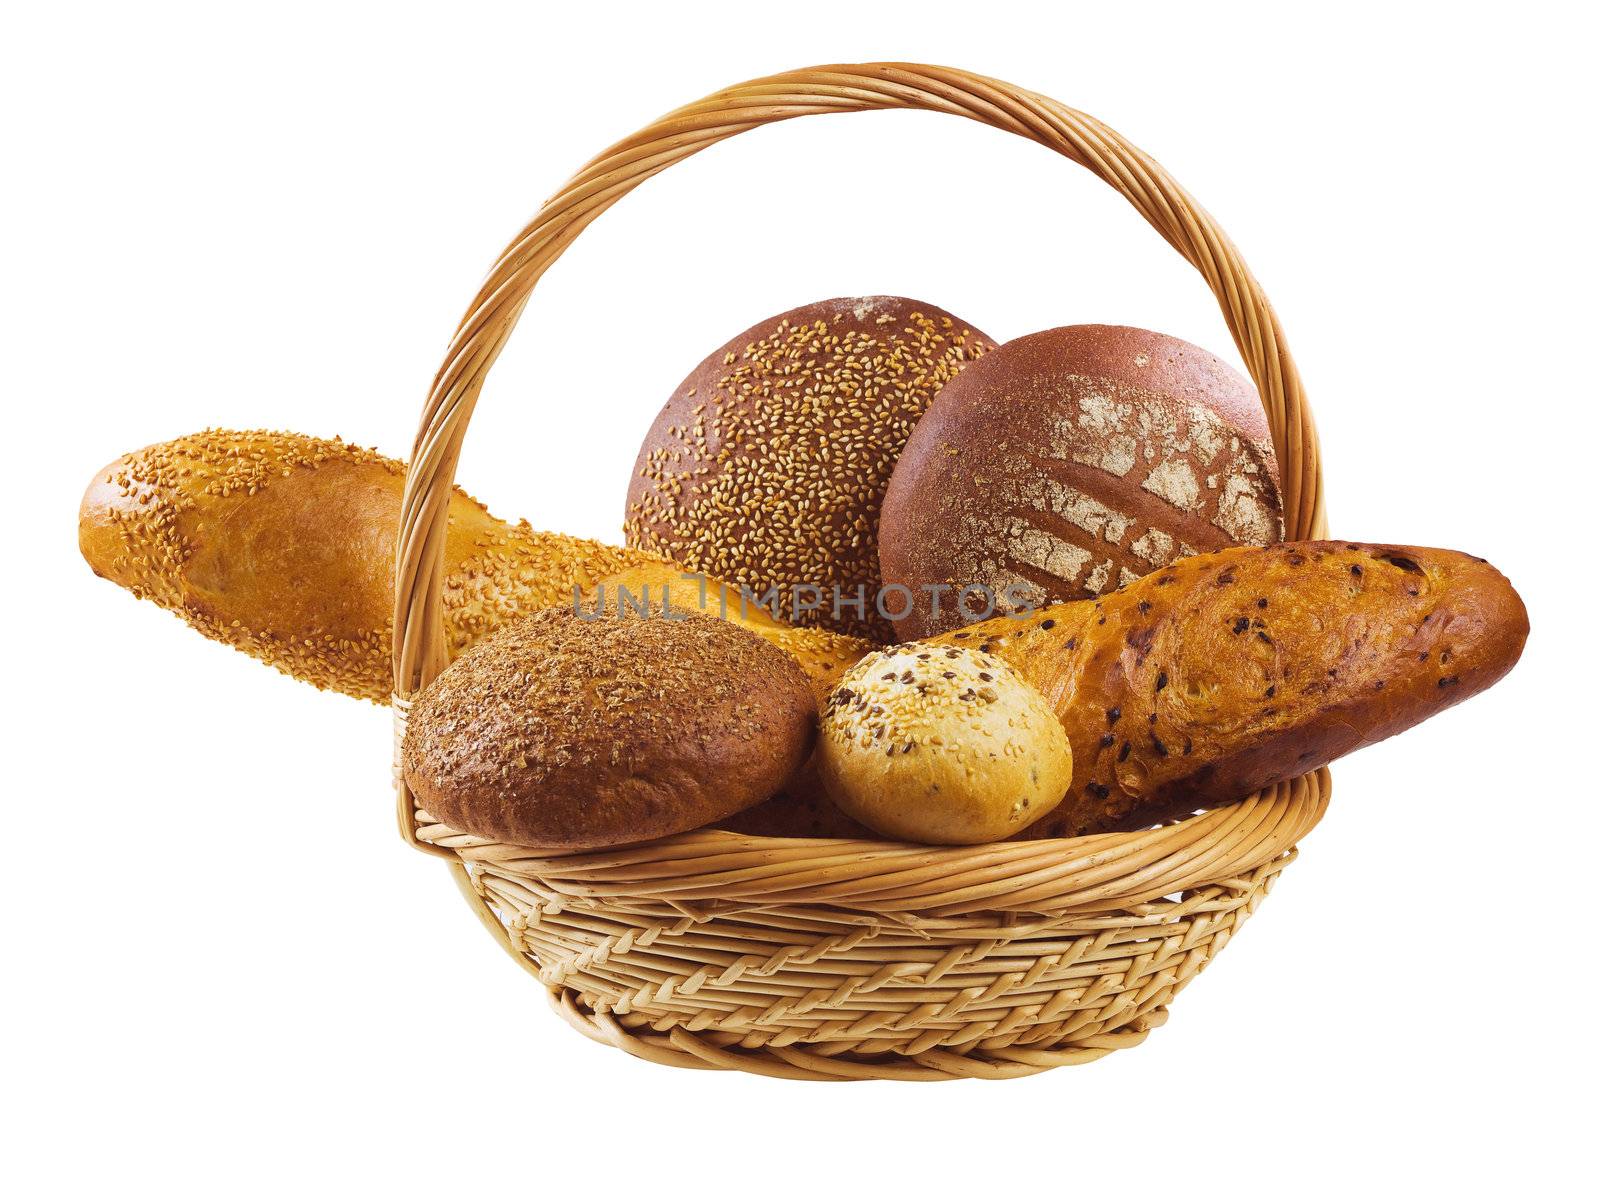 Basket of bread by oleg_zhukov